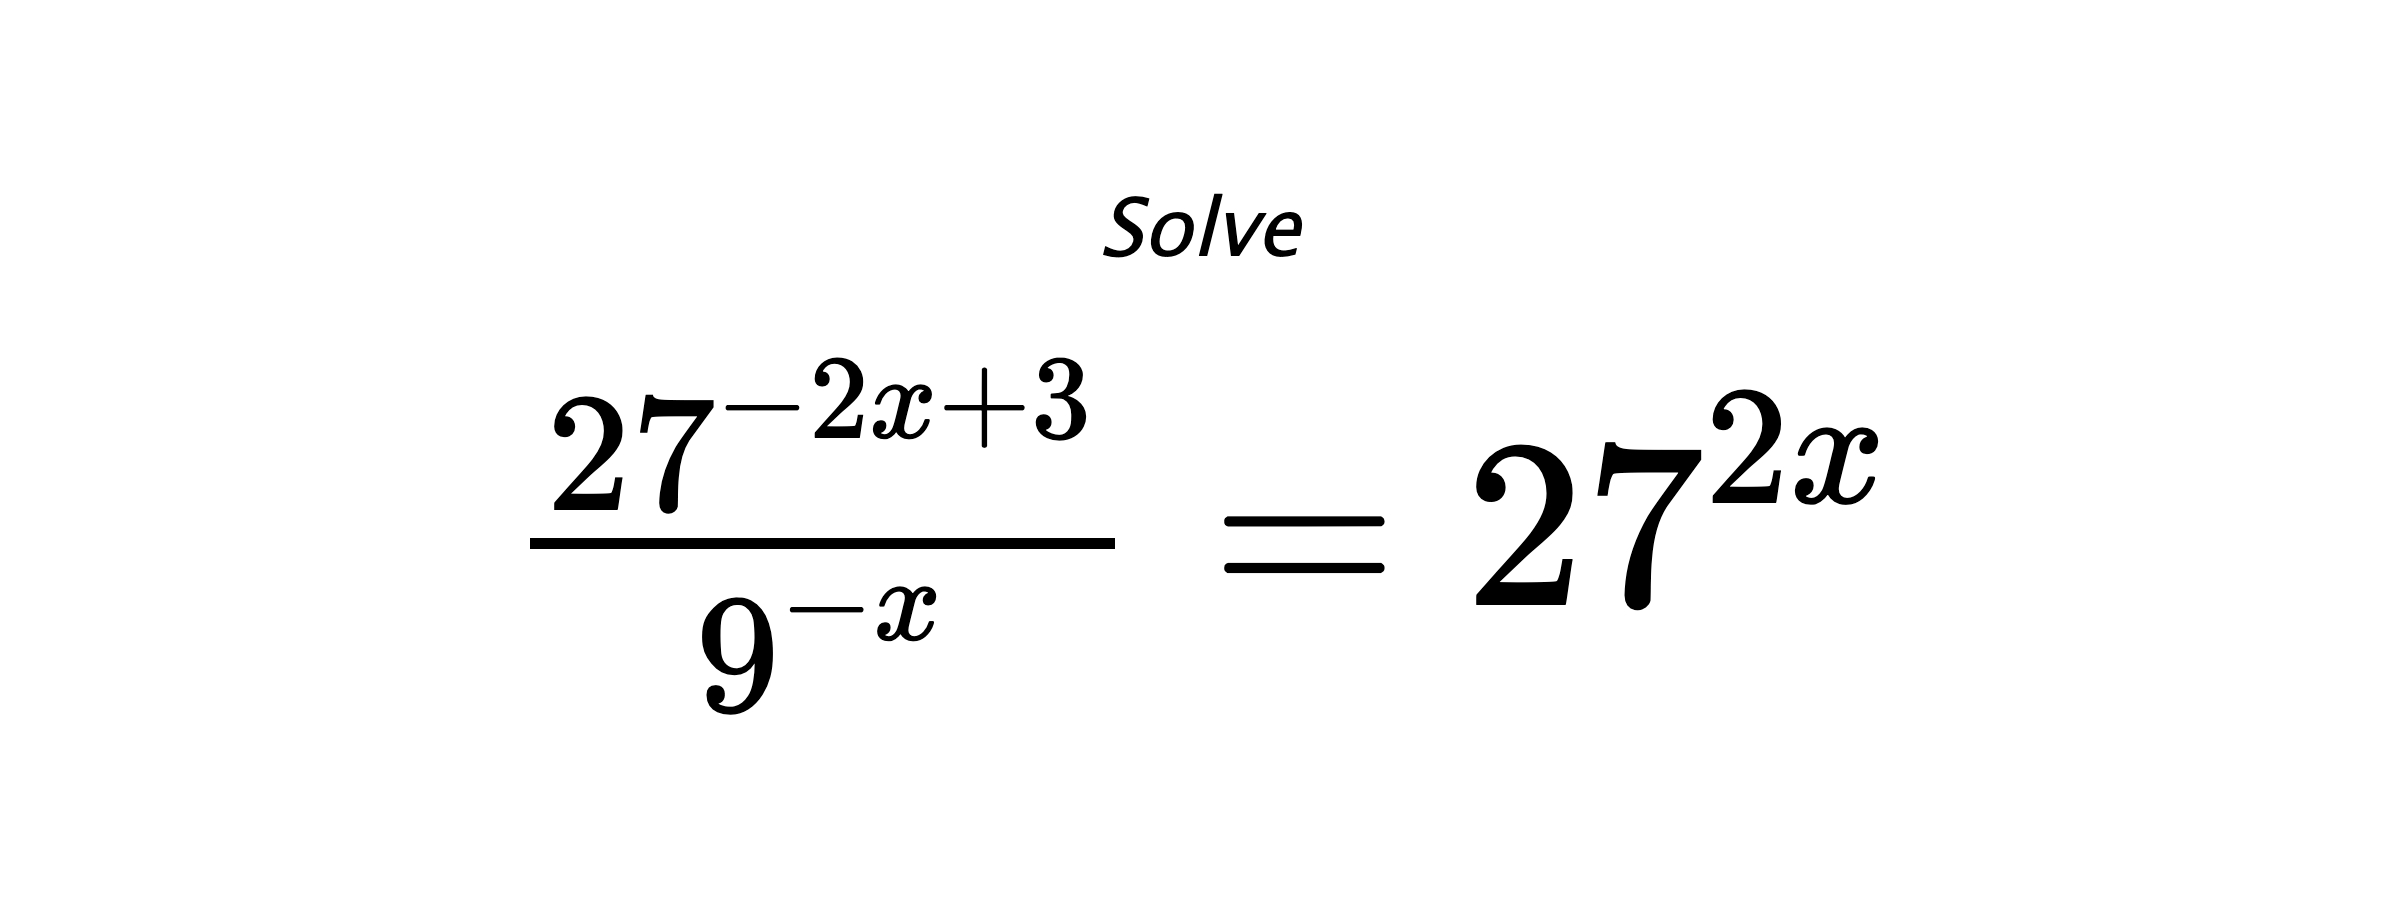 Solve $ \frac{27^{-2x+3}}{9^{-x}} = 27^{2x} $